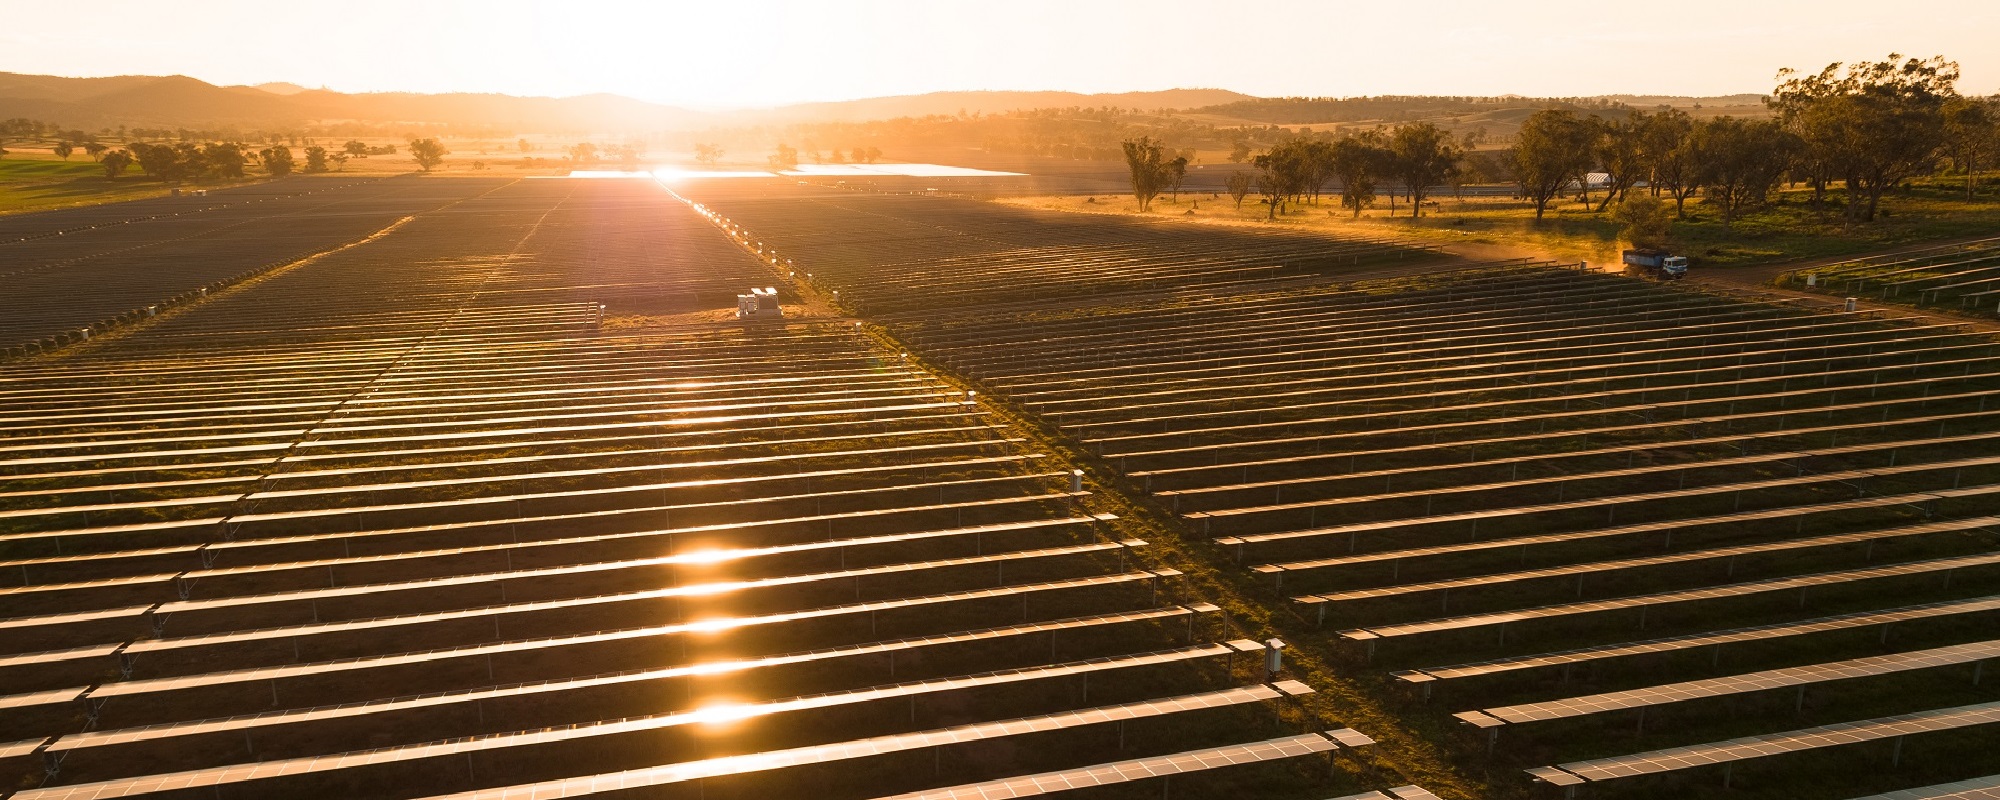 Wellington Solar Farm